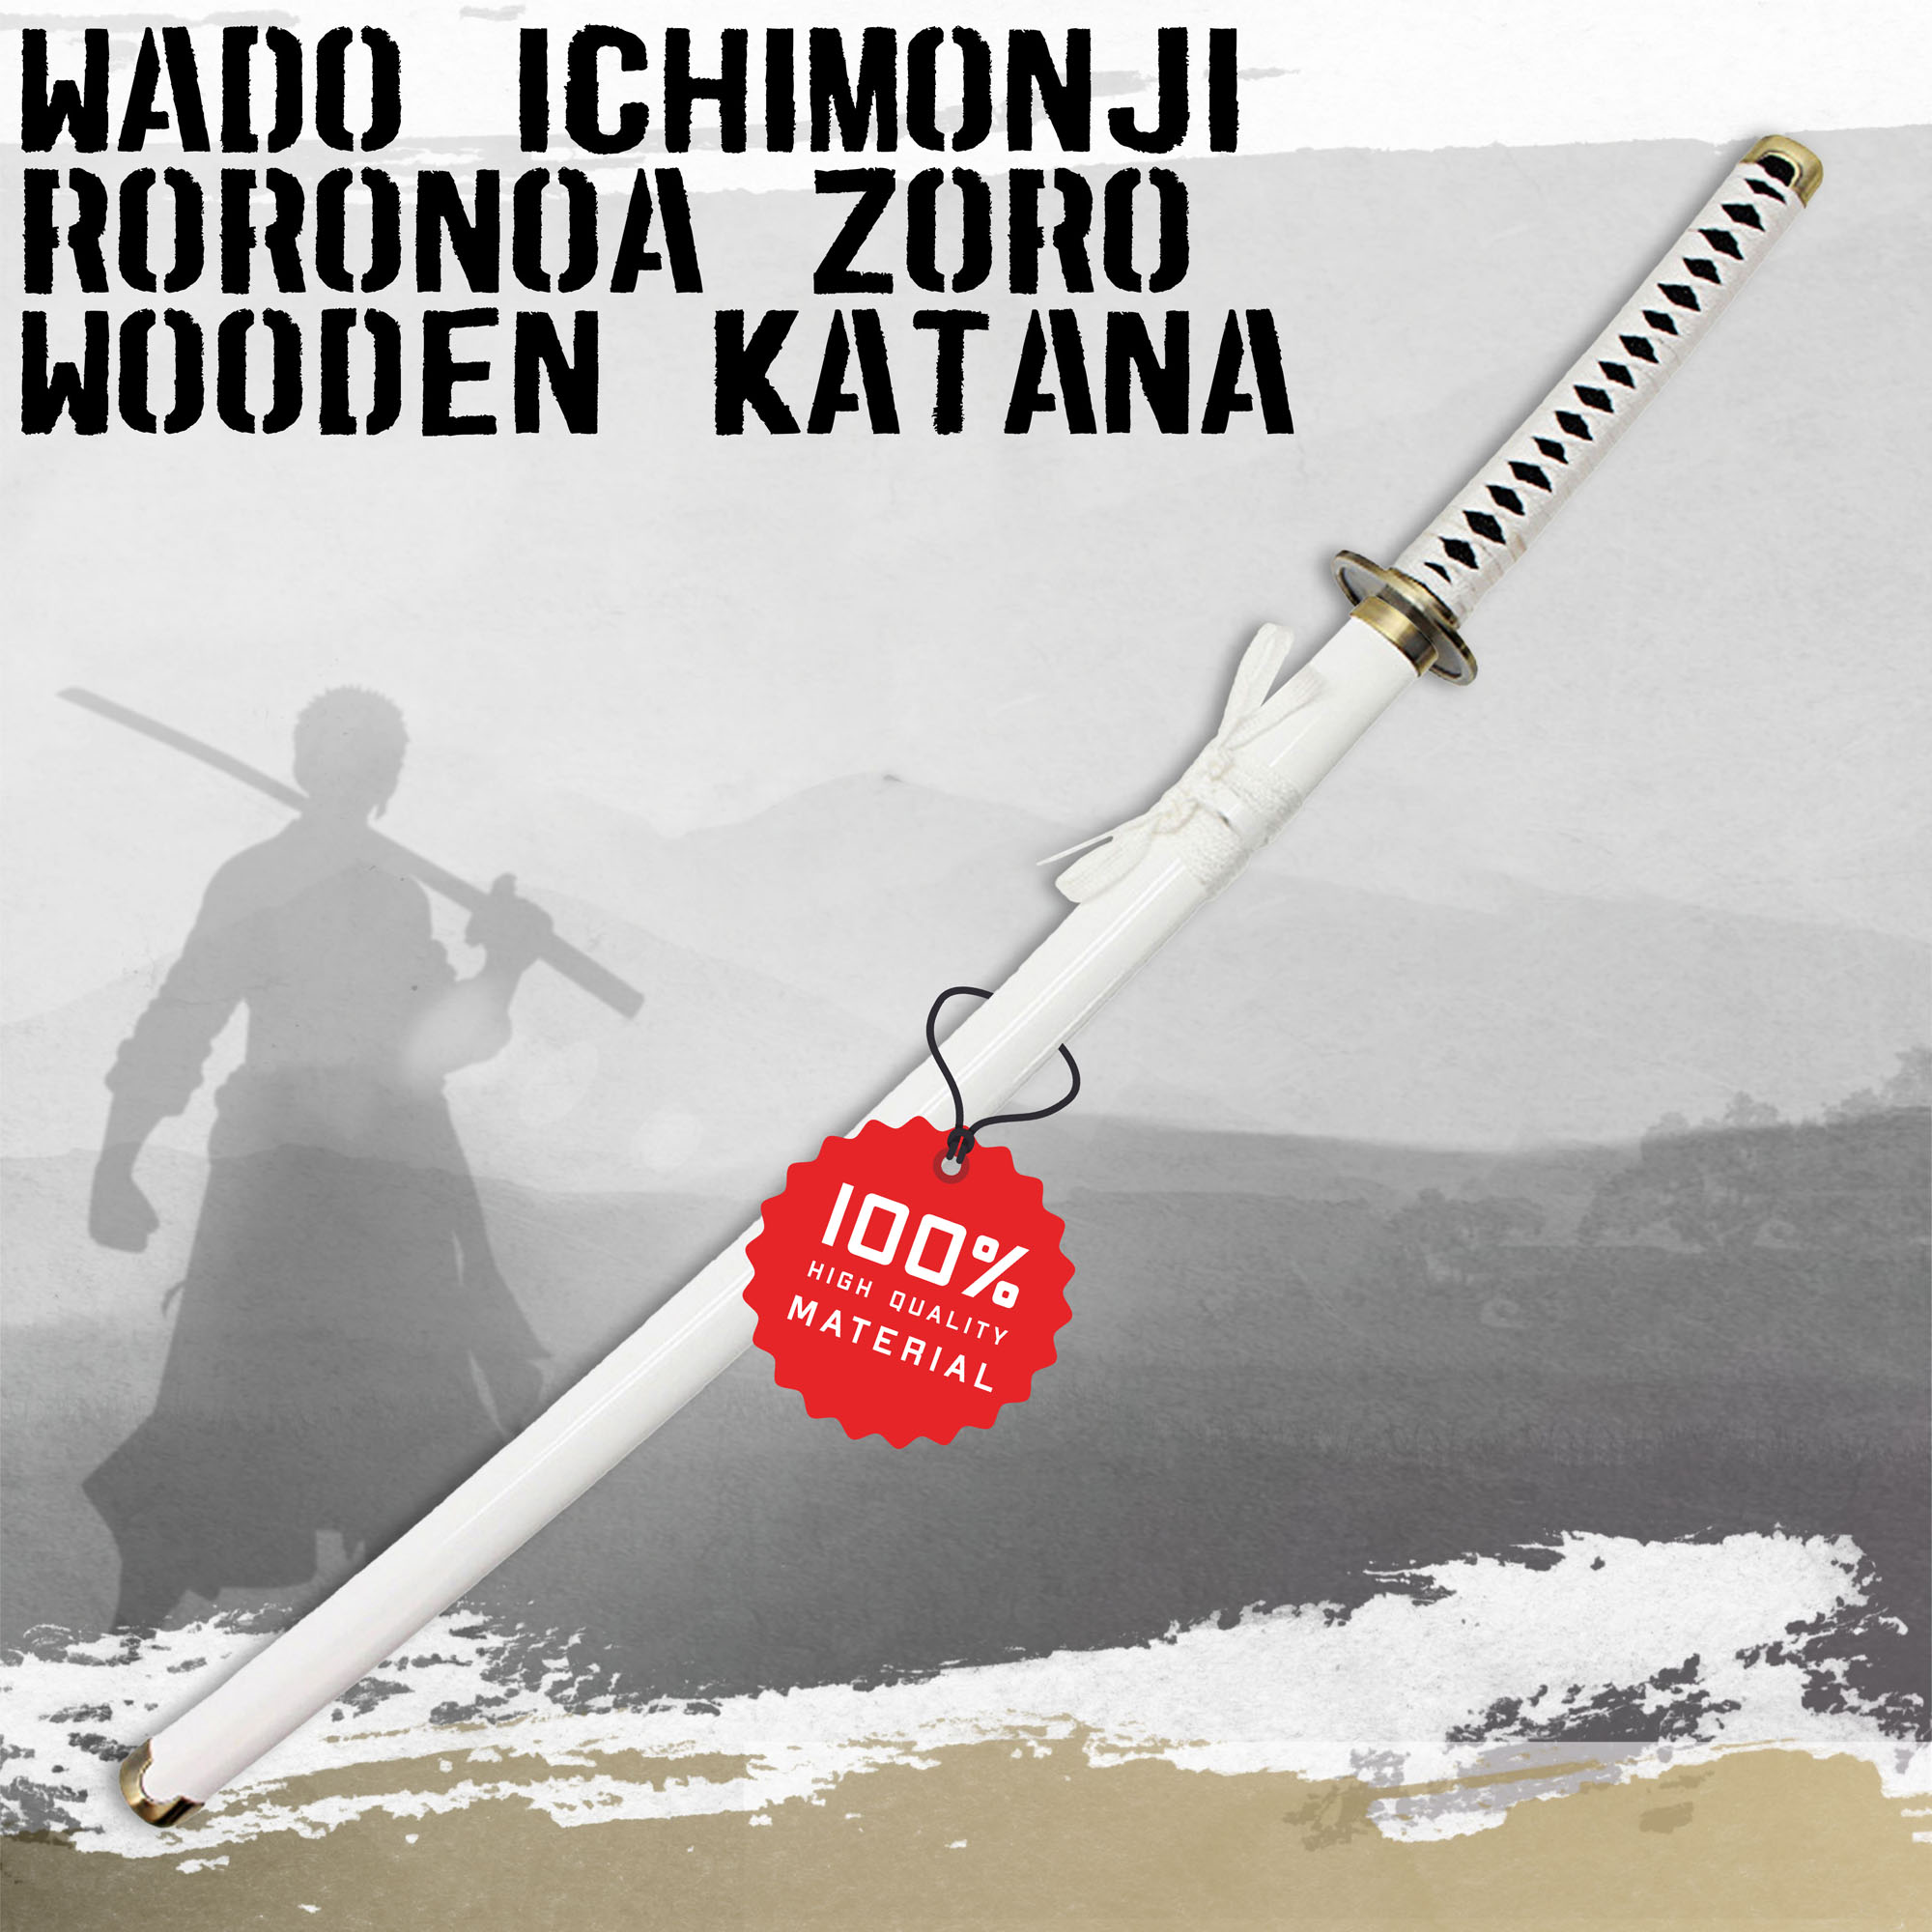 One Piece - Wado-Ichi-Monji Wooden Katana with Sheath